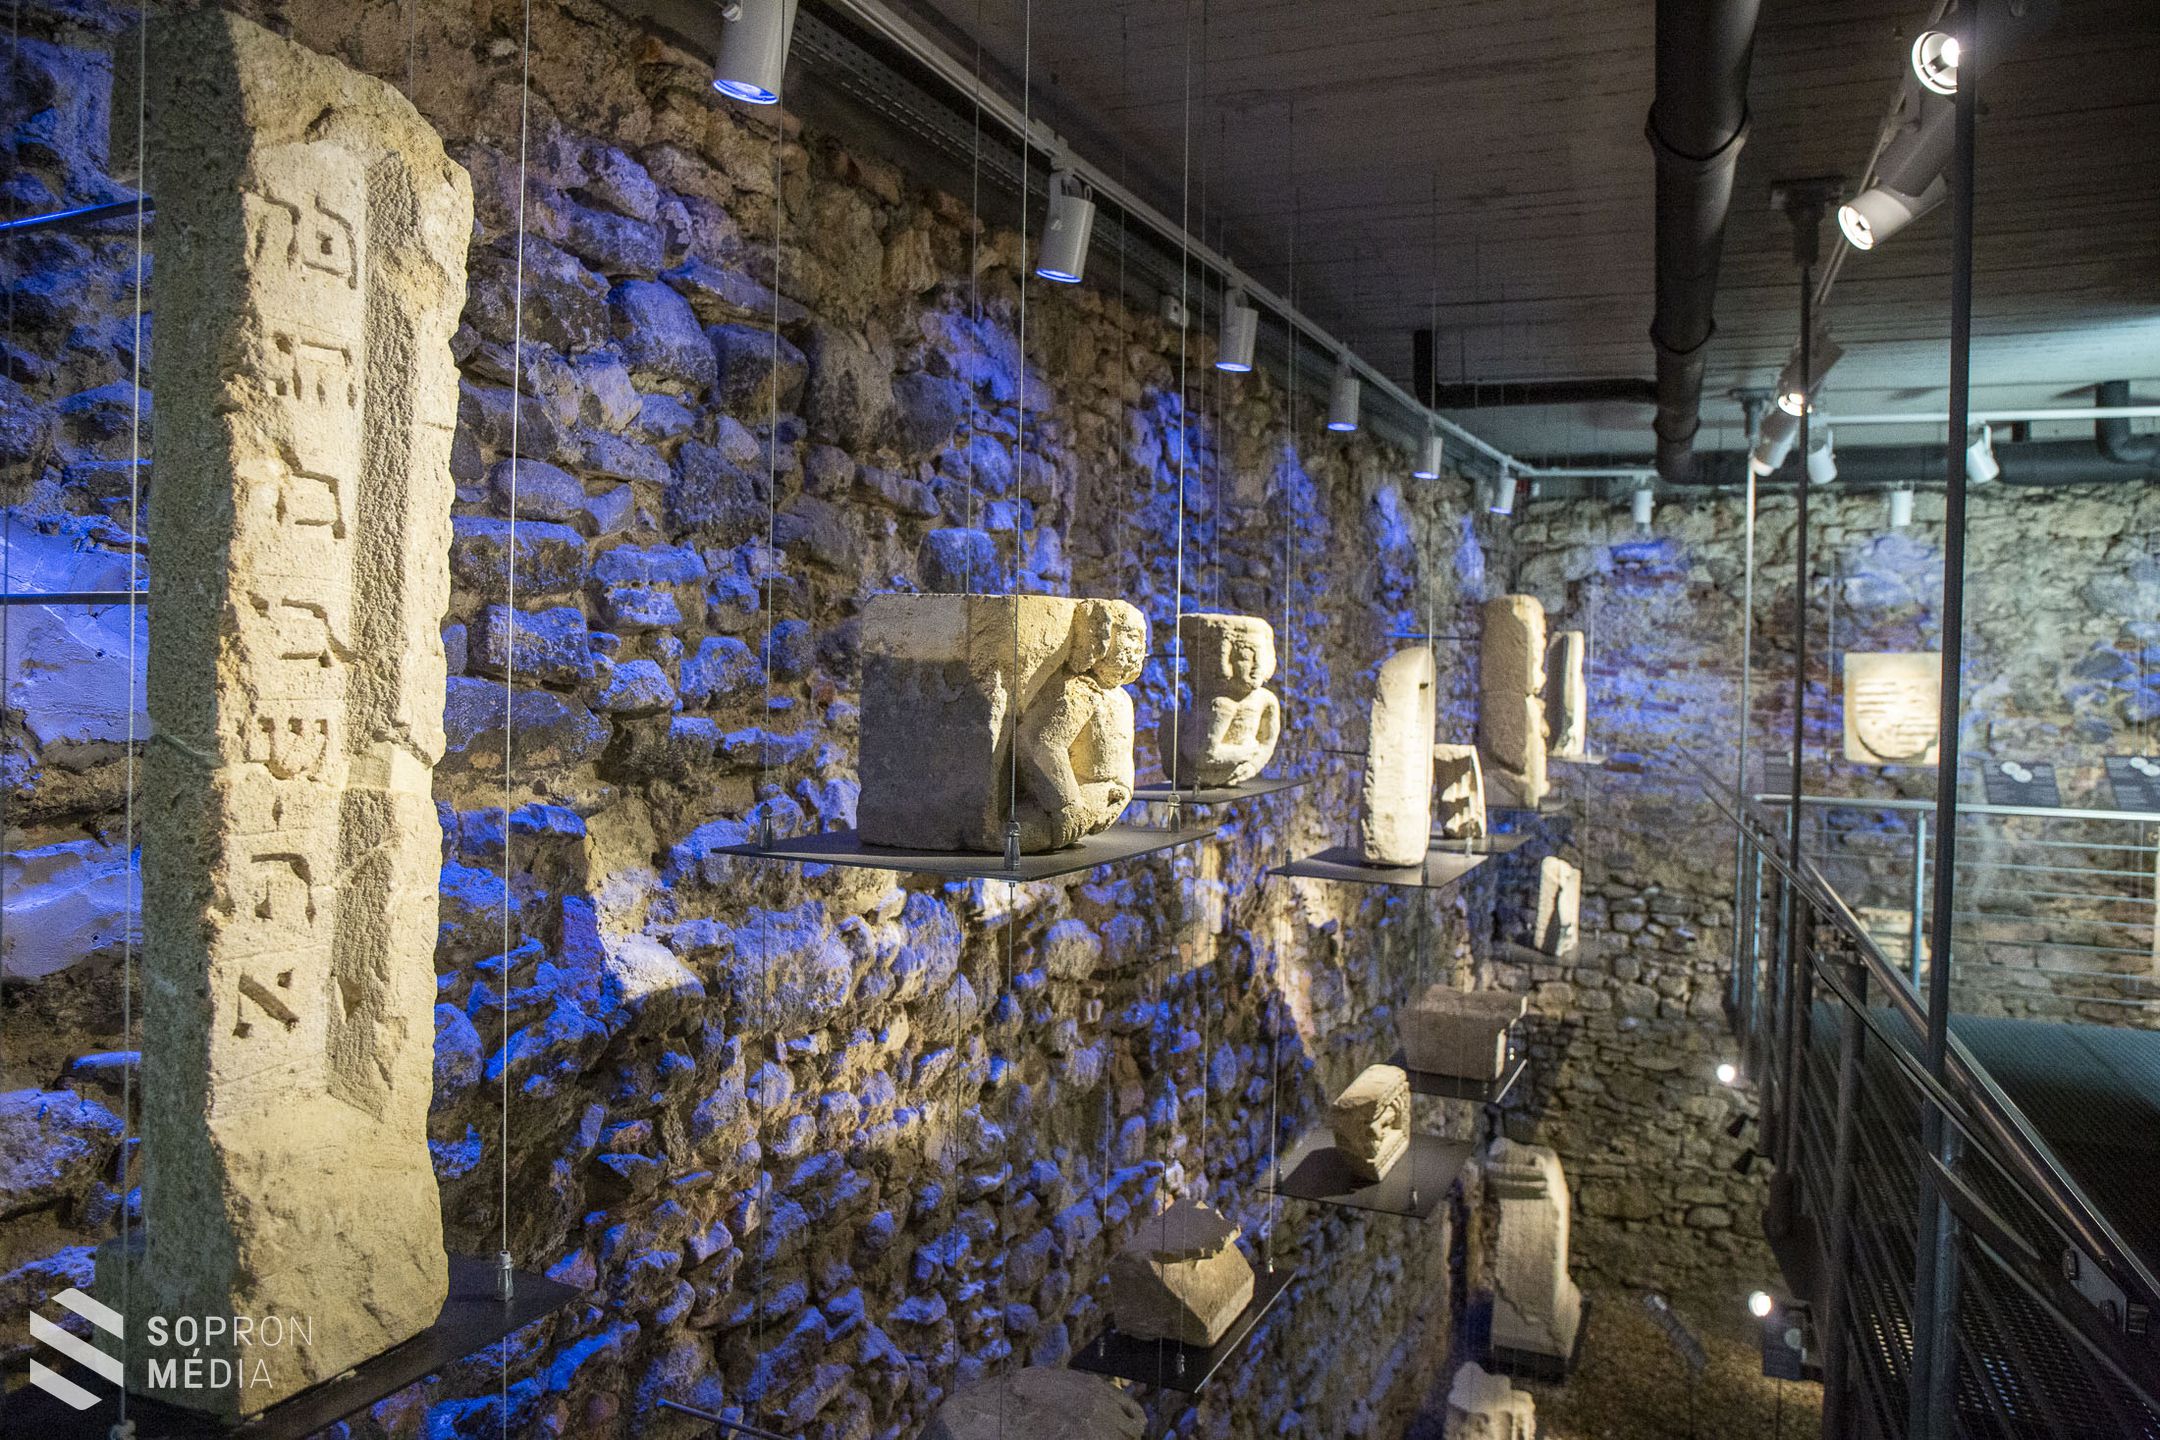 Csodás kőfaragványokból nyílt új, állandó kiállítás a Tűztoronyban - KÉPEK
